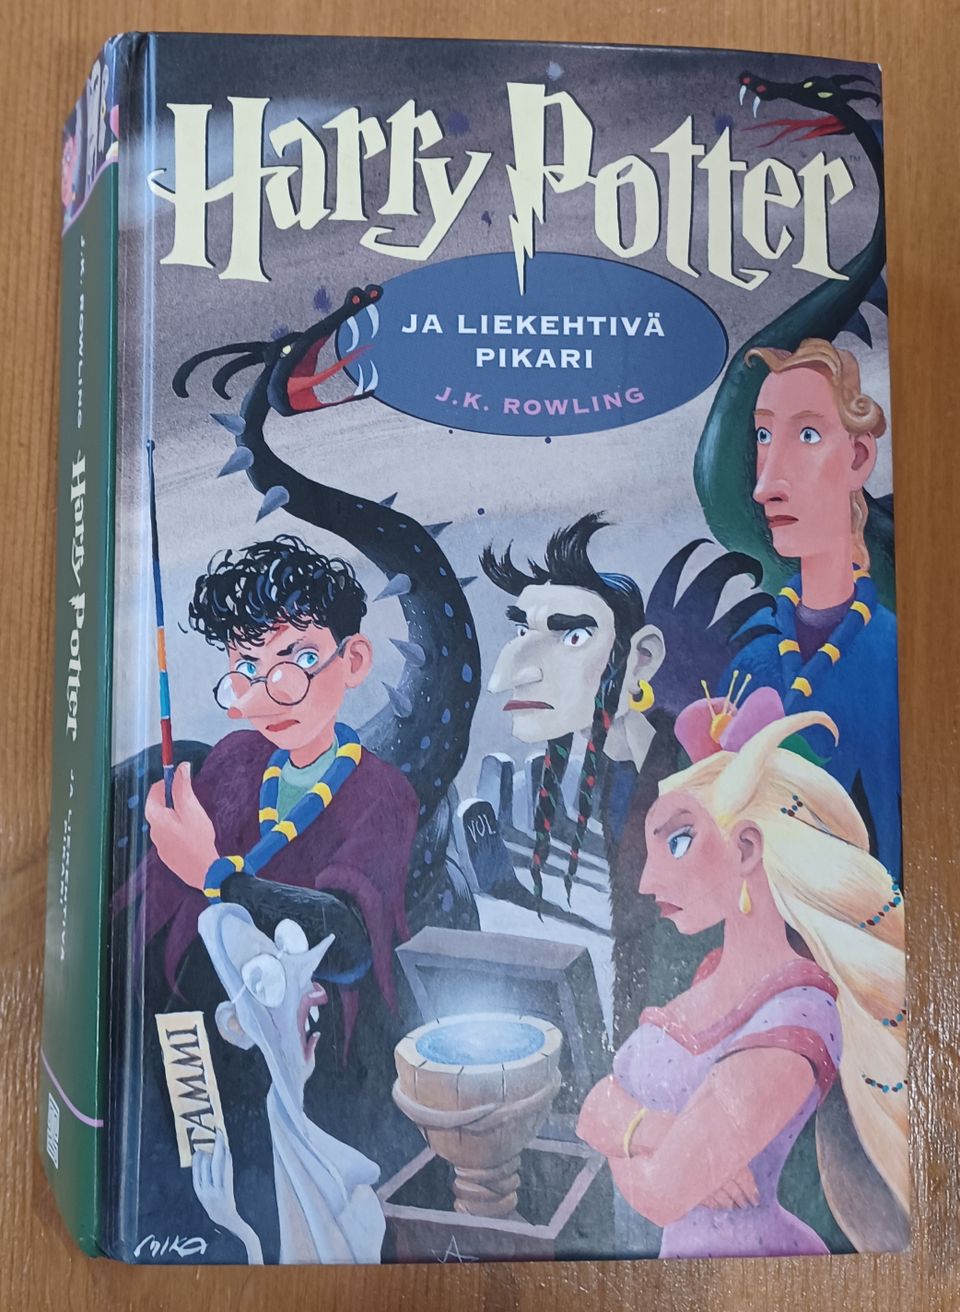 Harry Potter ja Liekehtivä Pikari